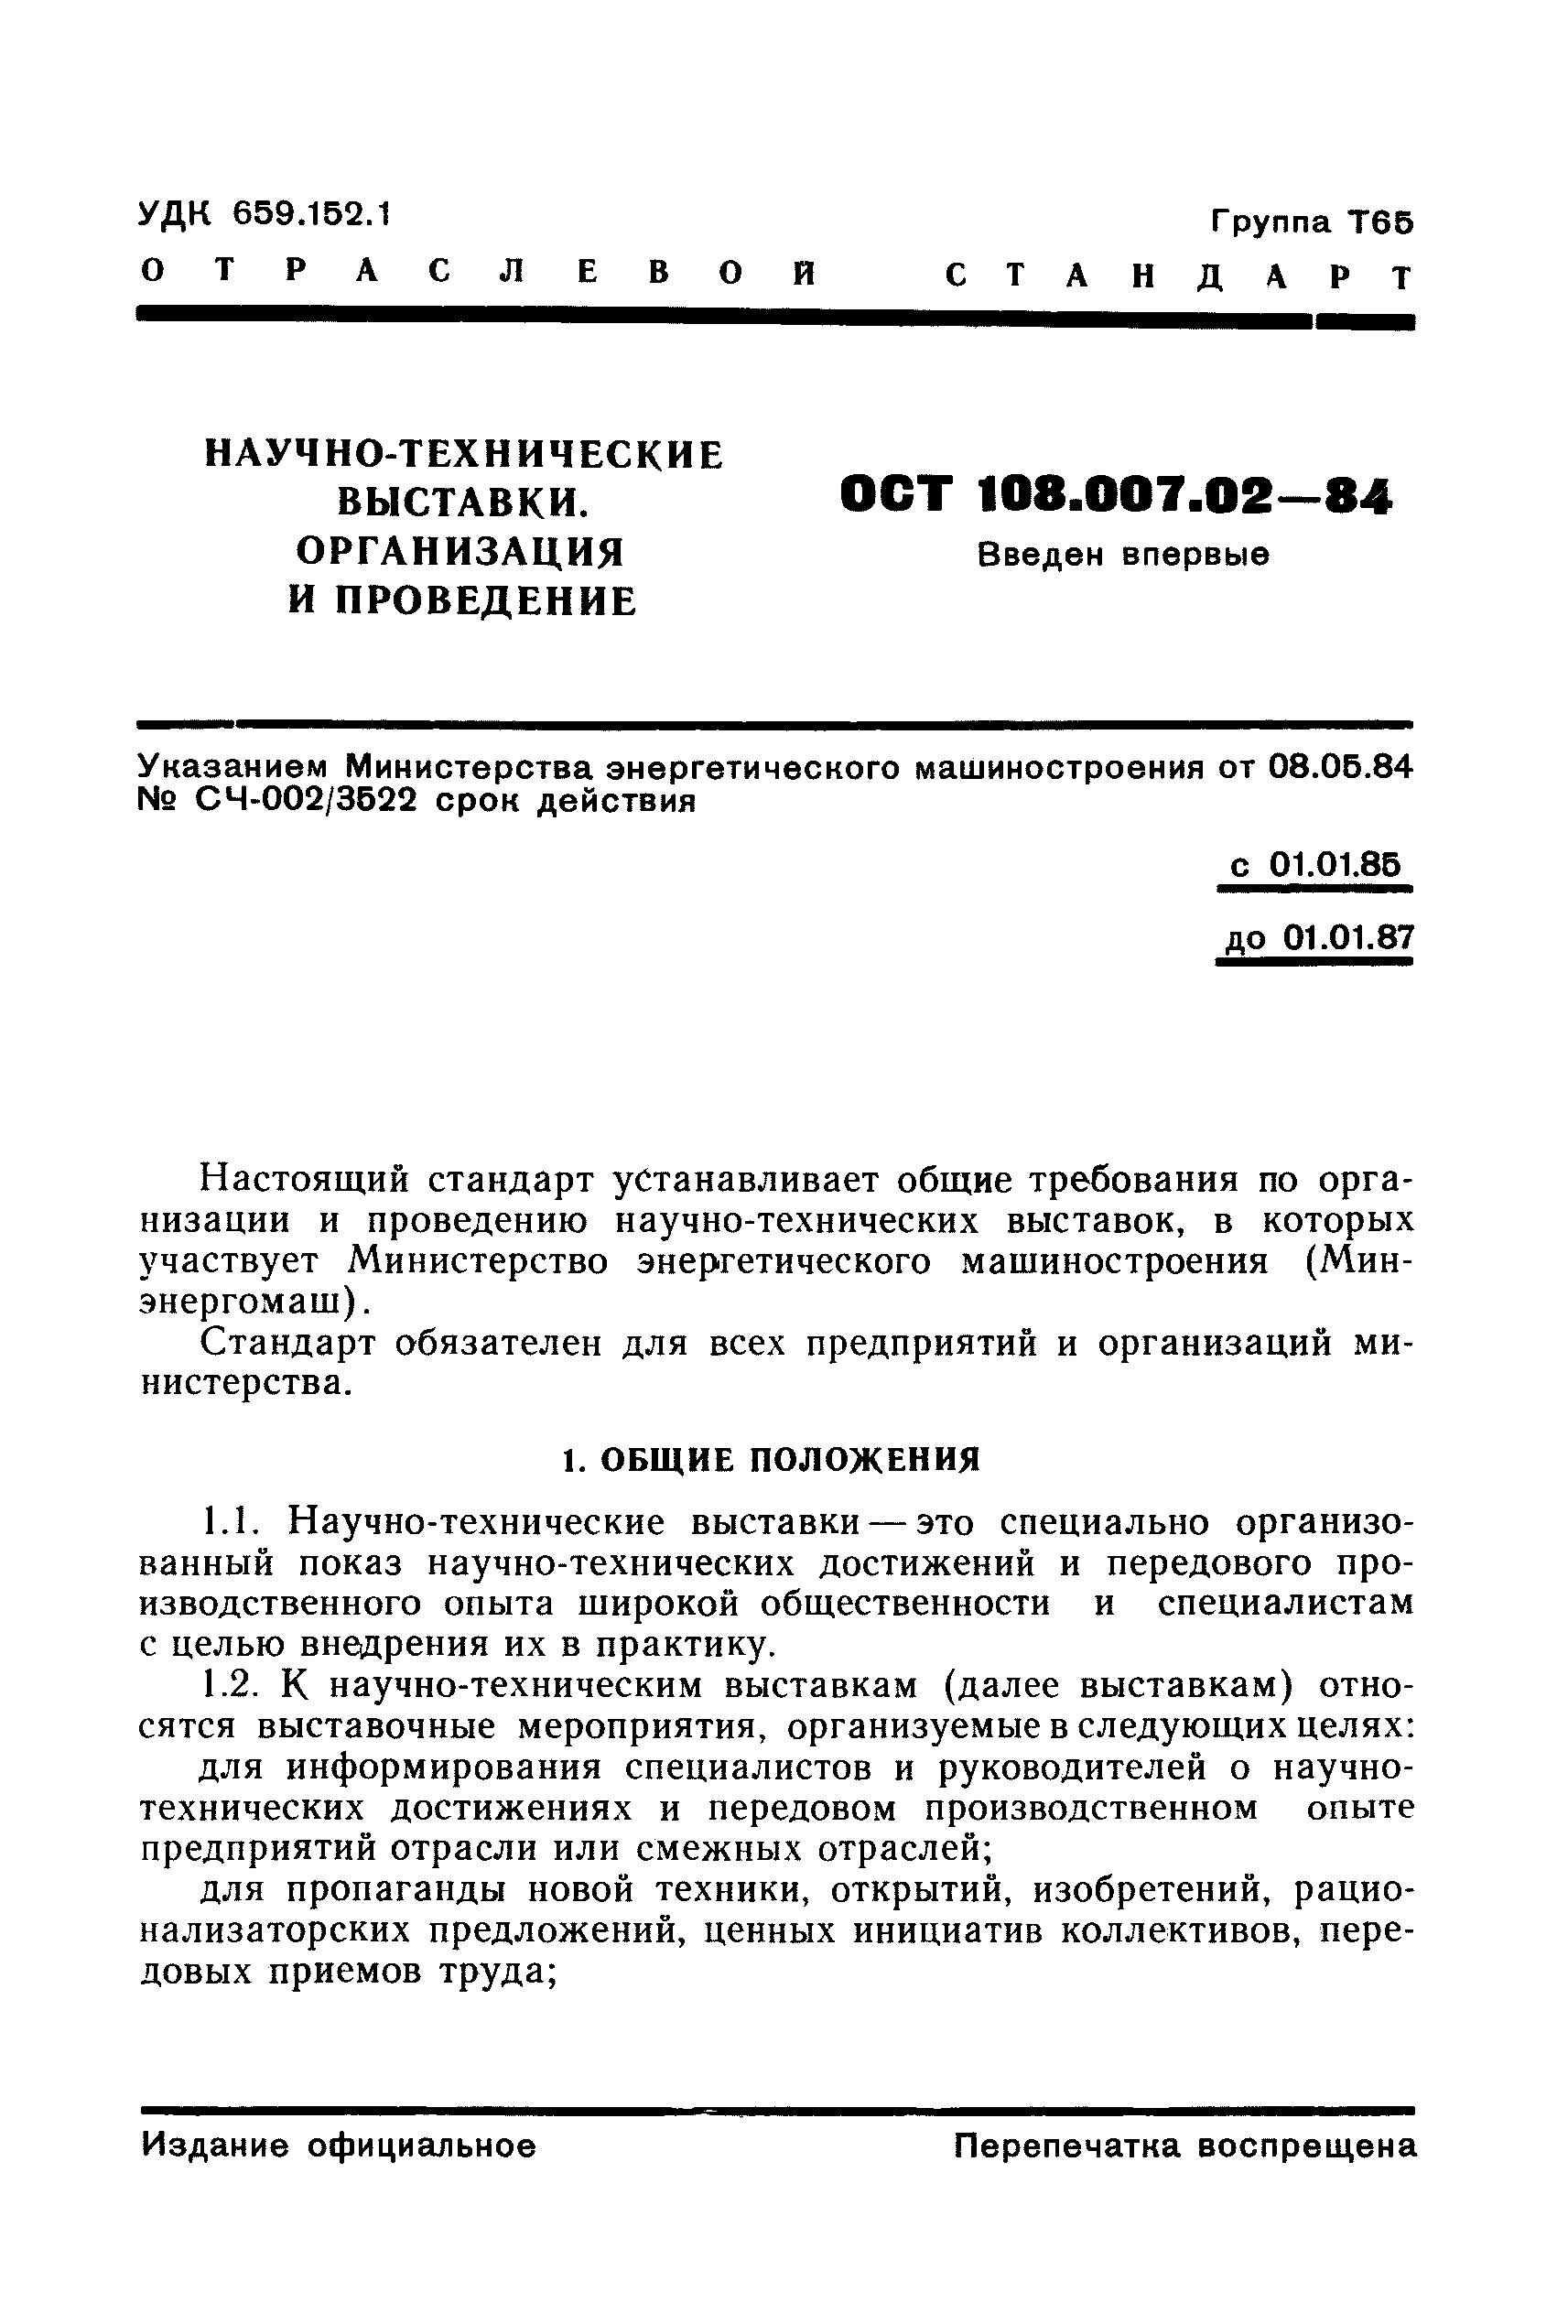 ОСТ 108.007.02-84